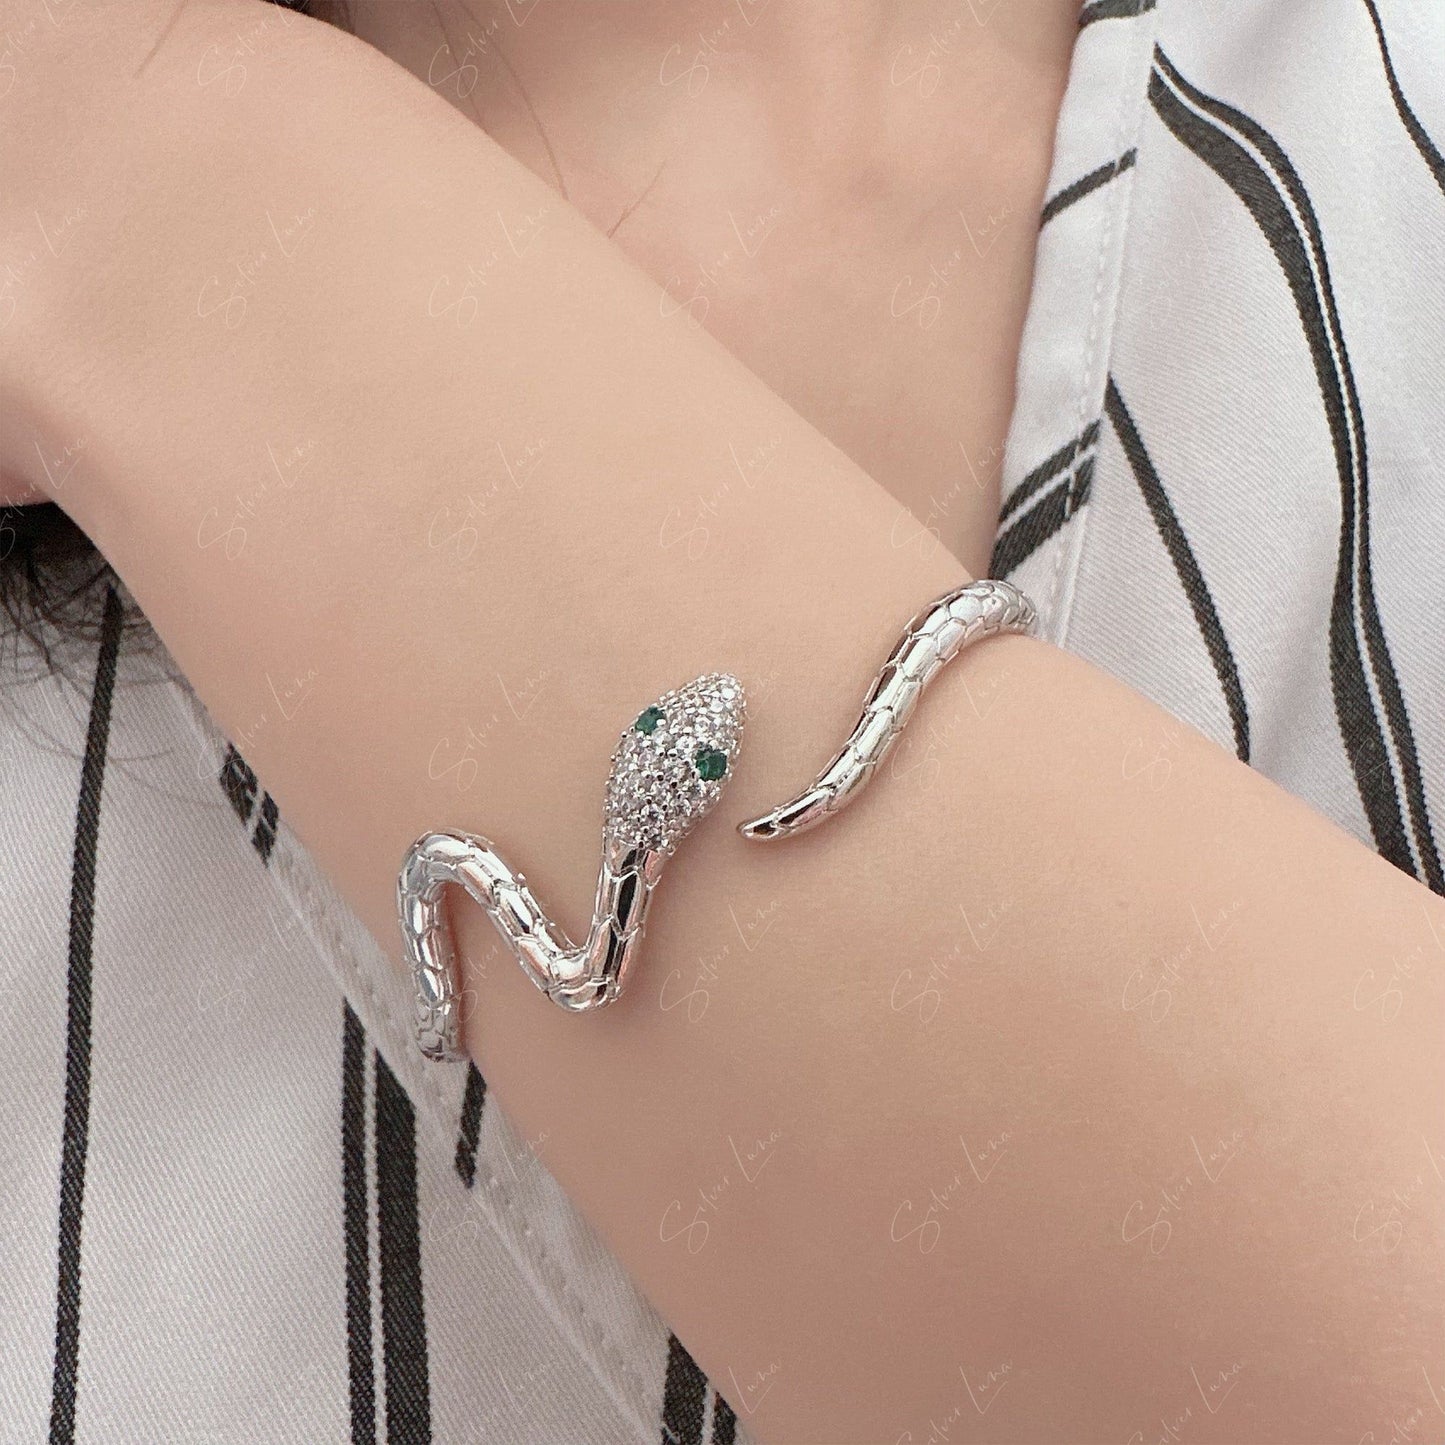 Bohemian snake wrap open bangle bracelet